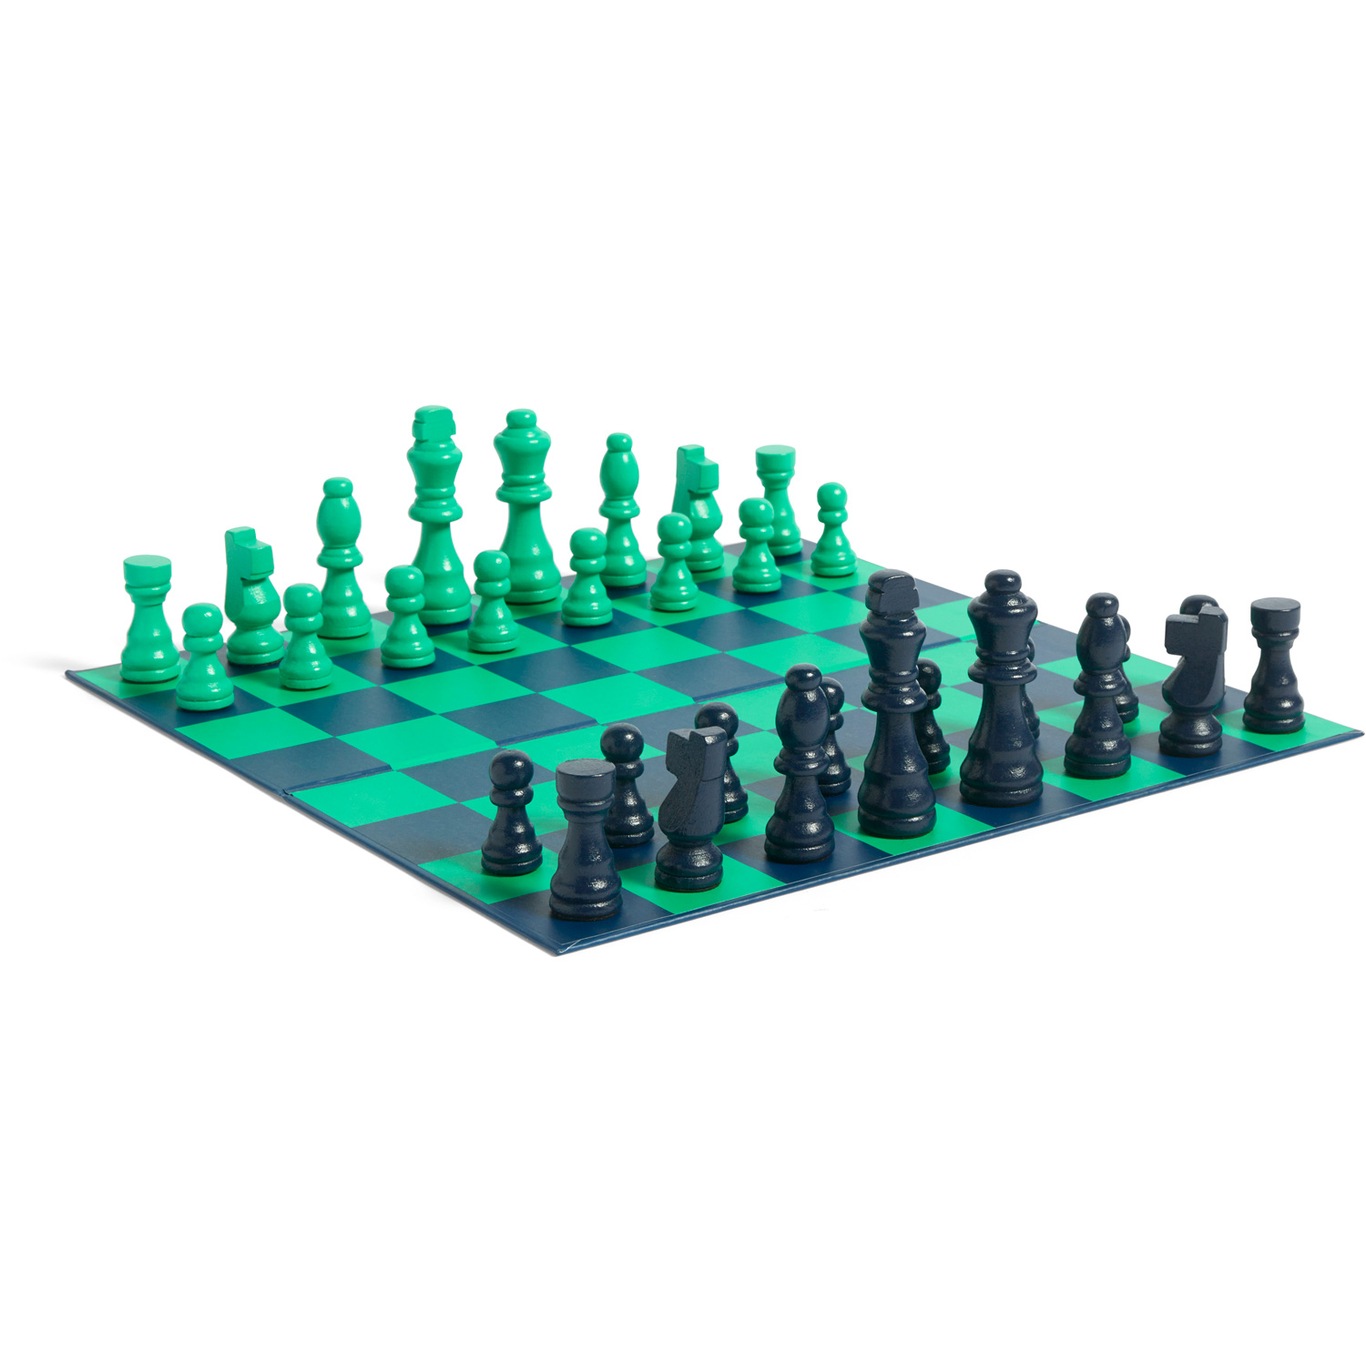 PLAY Chess Spieleset, Grün